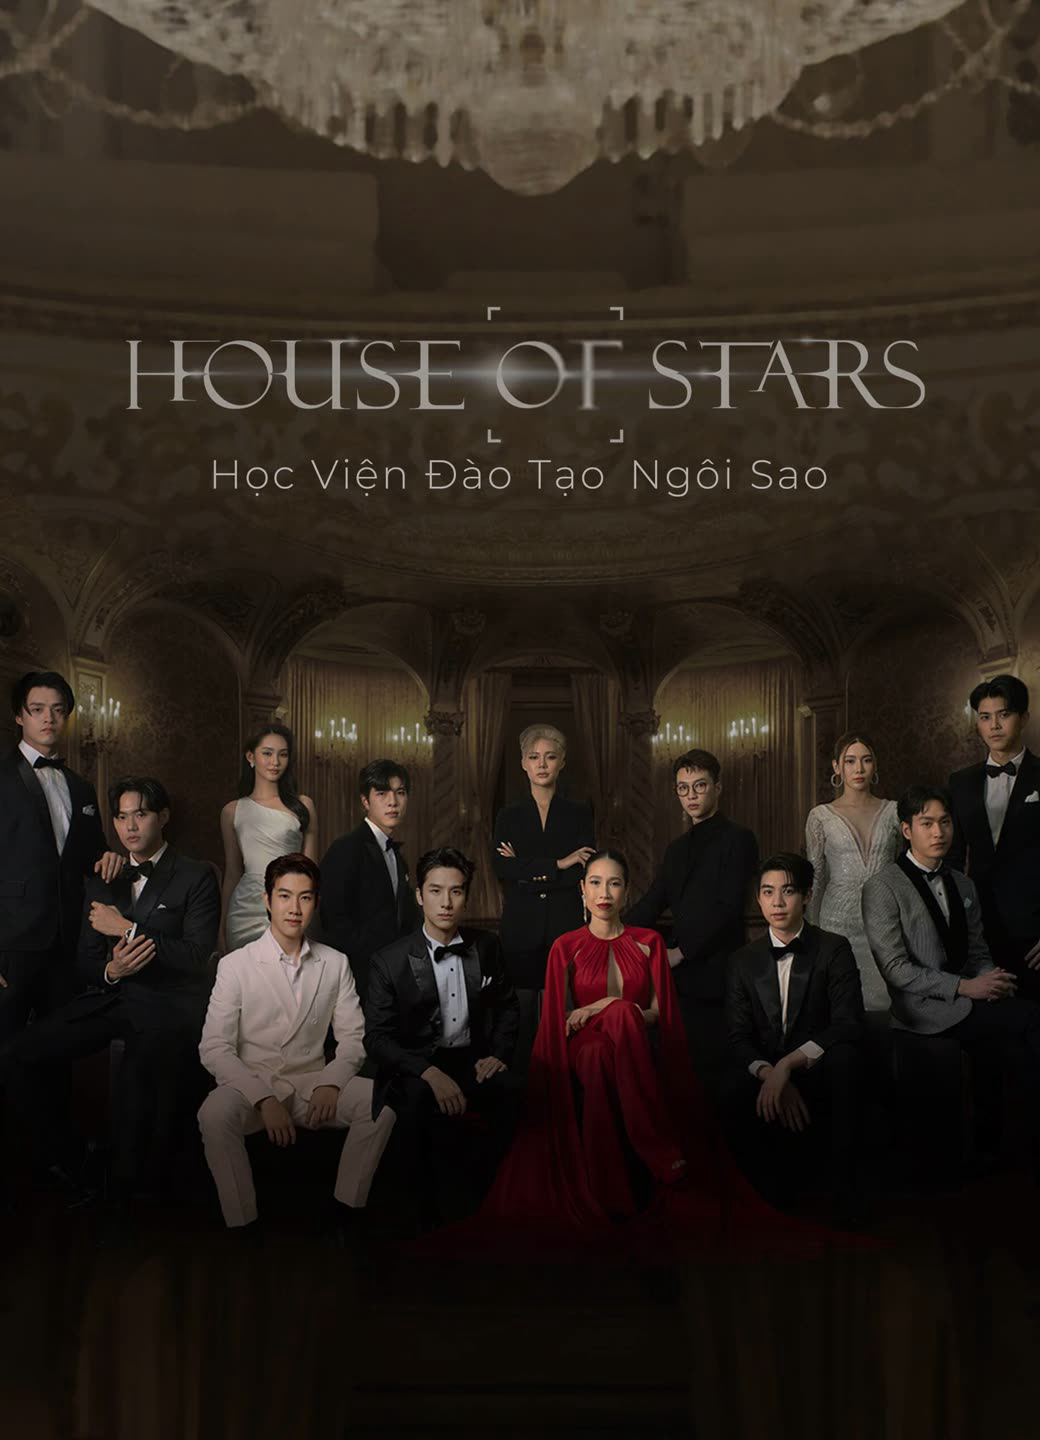 Xem Phim House of Stars: Học Viện Đào Tạo Ngôi Sao (House of stars)